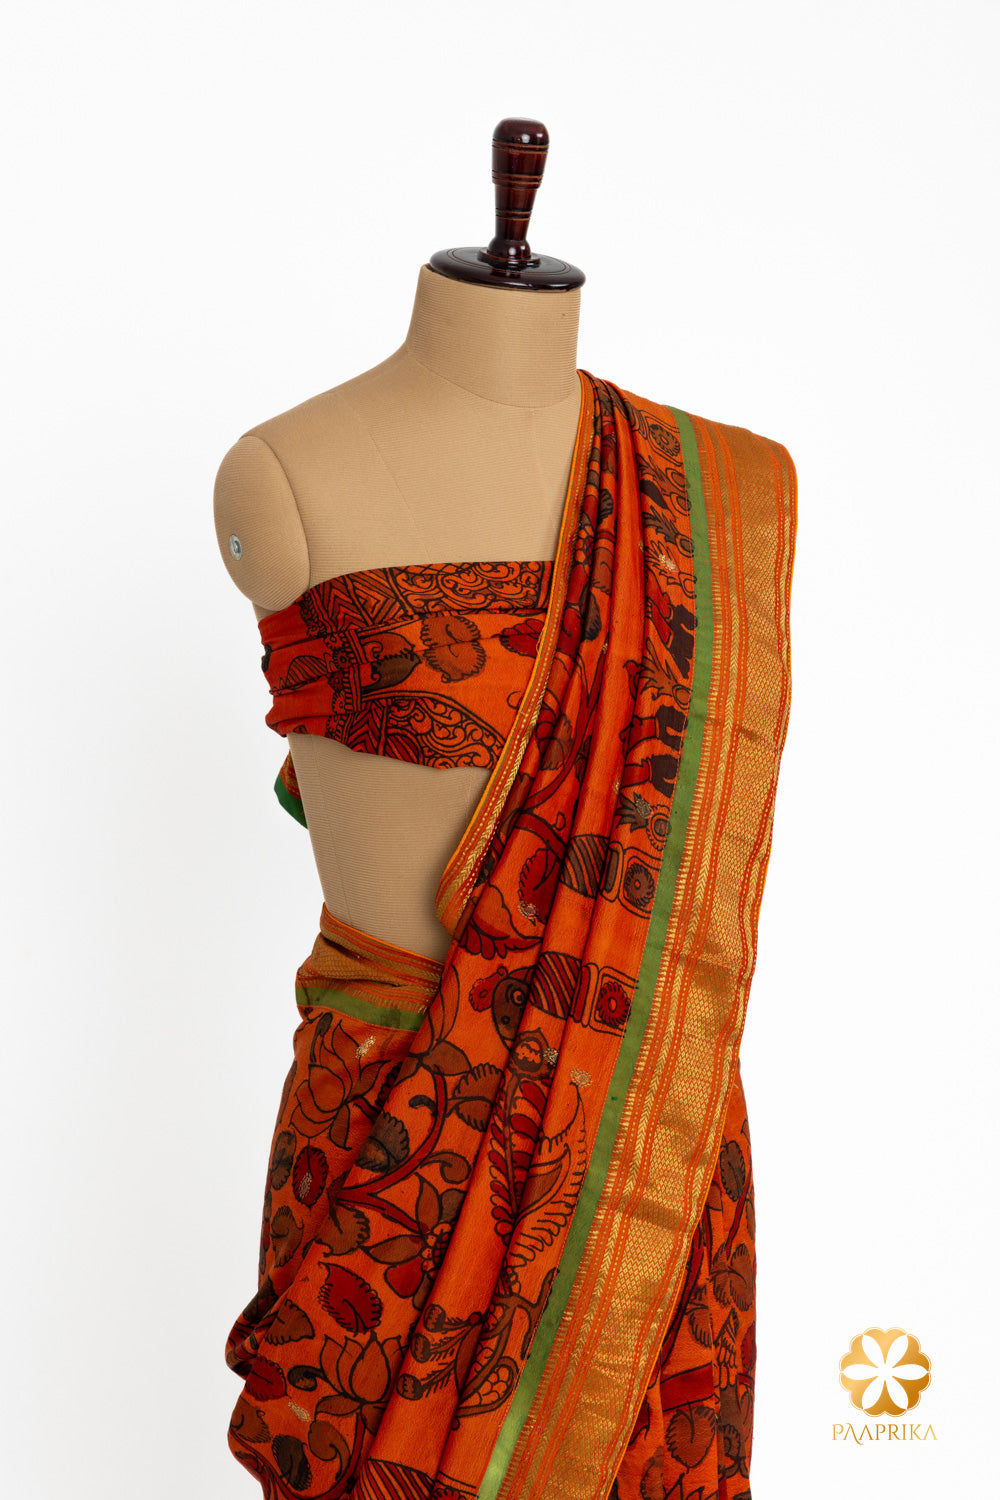 A close-up of the Tussar Silk Saree, showcasing its intricate Natural Kalamkari floral theme.